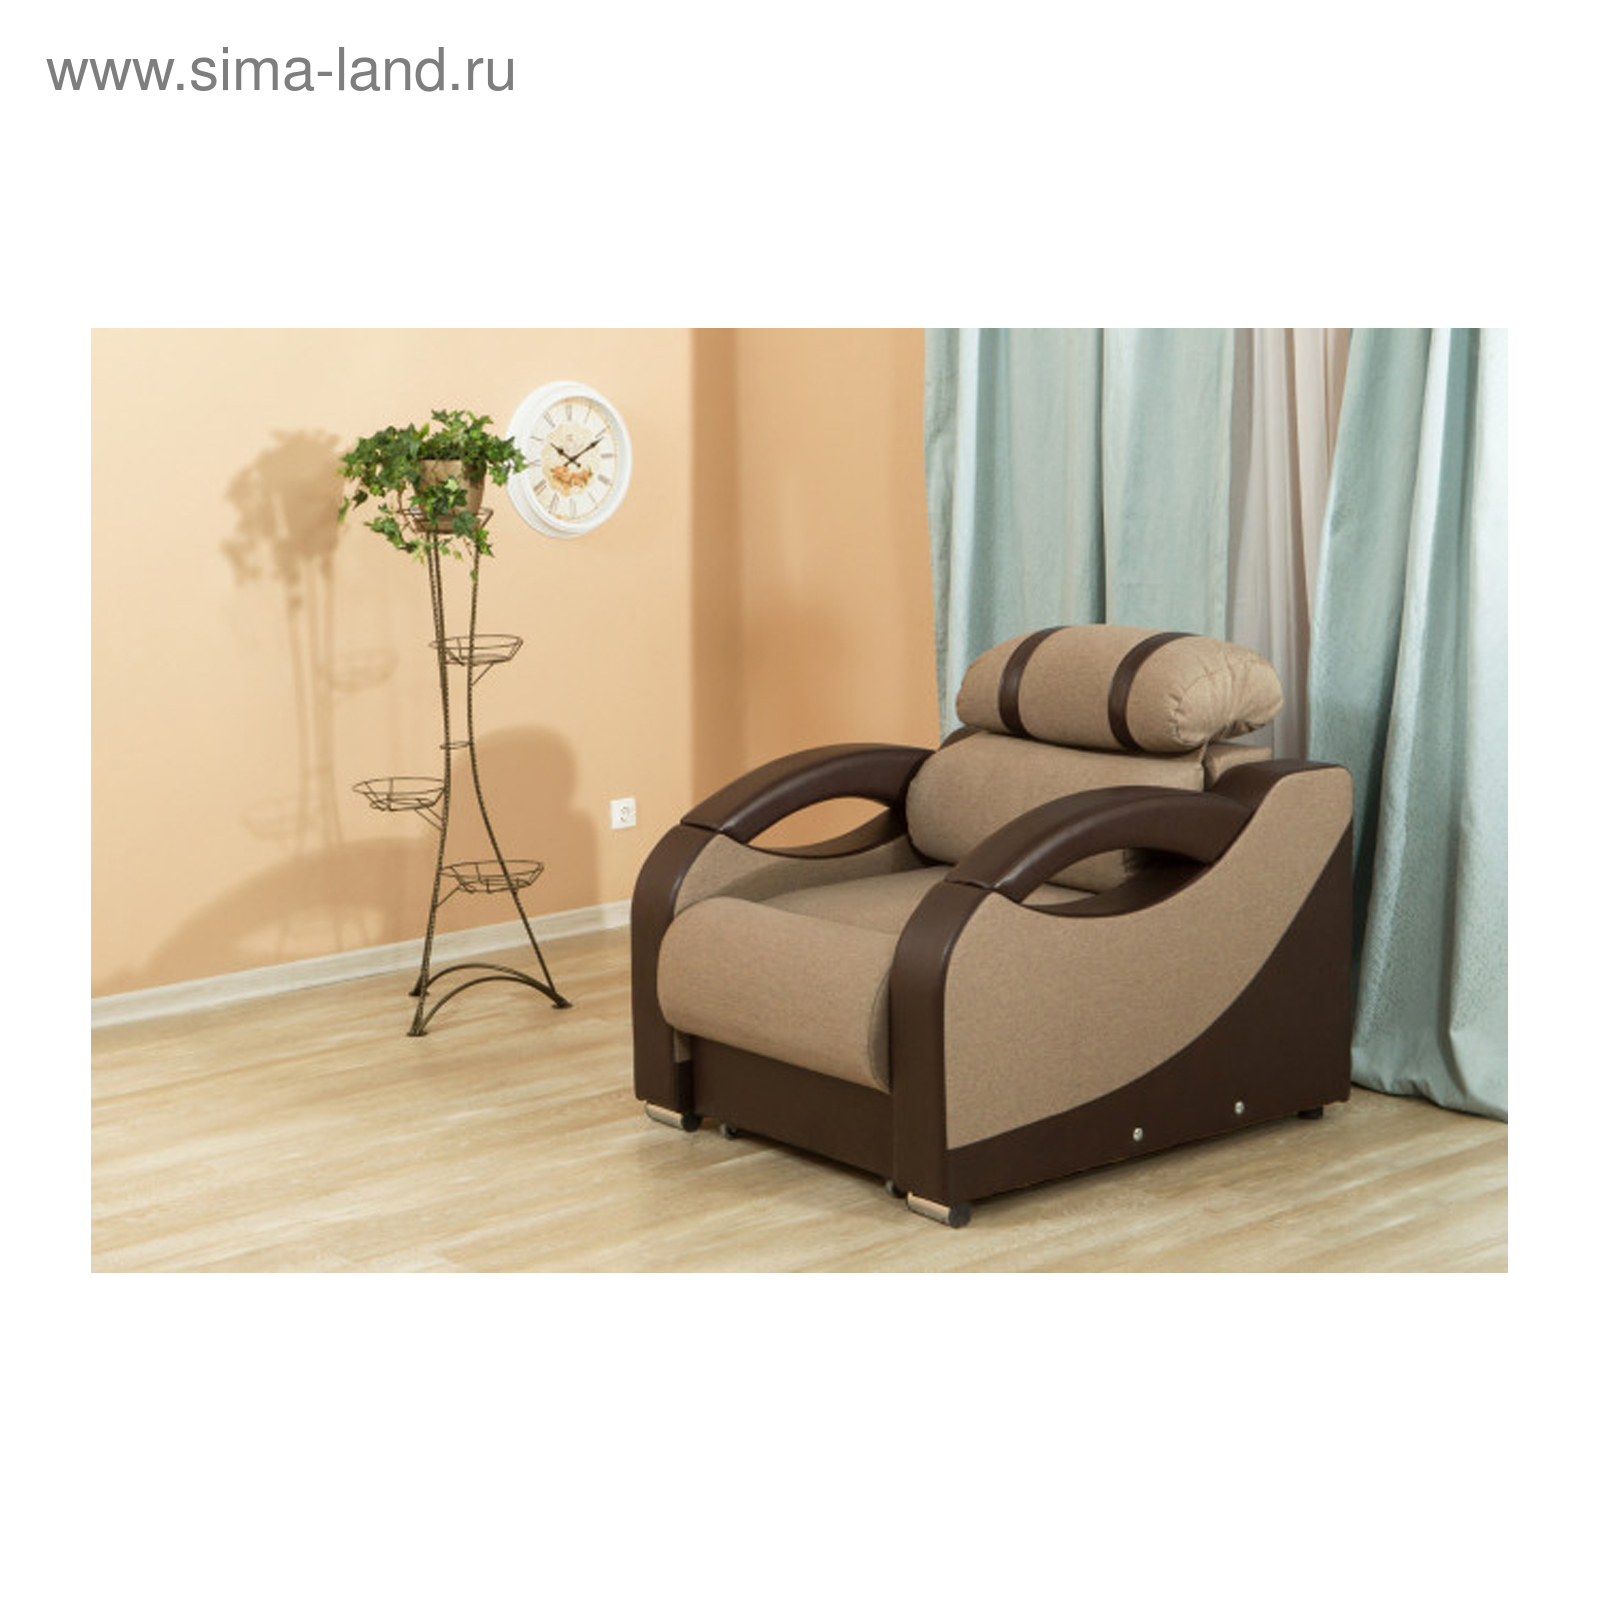 Кресло кровать виза 011